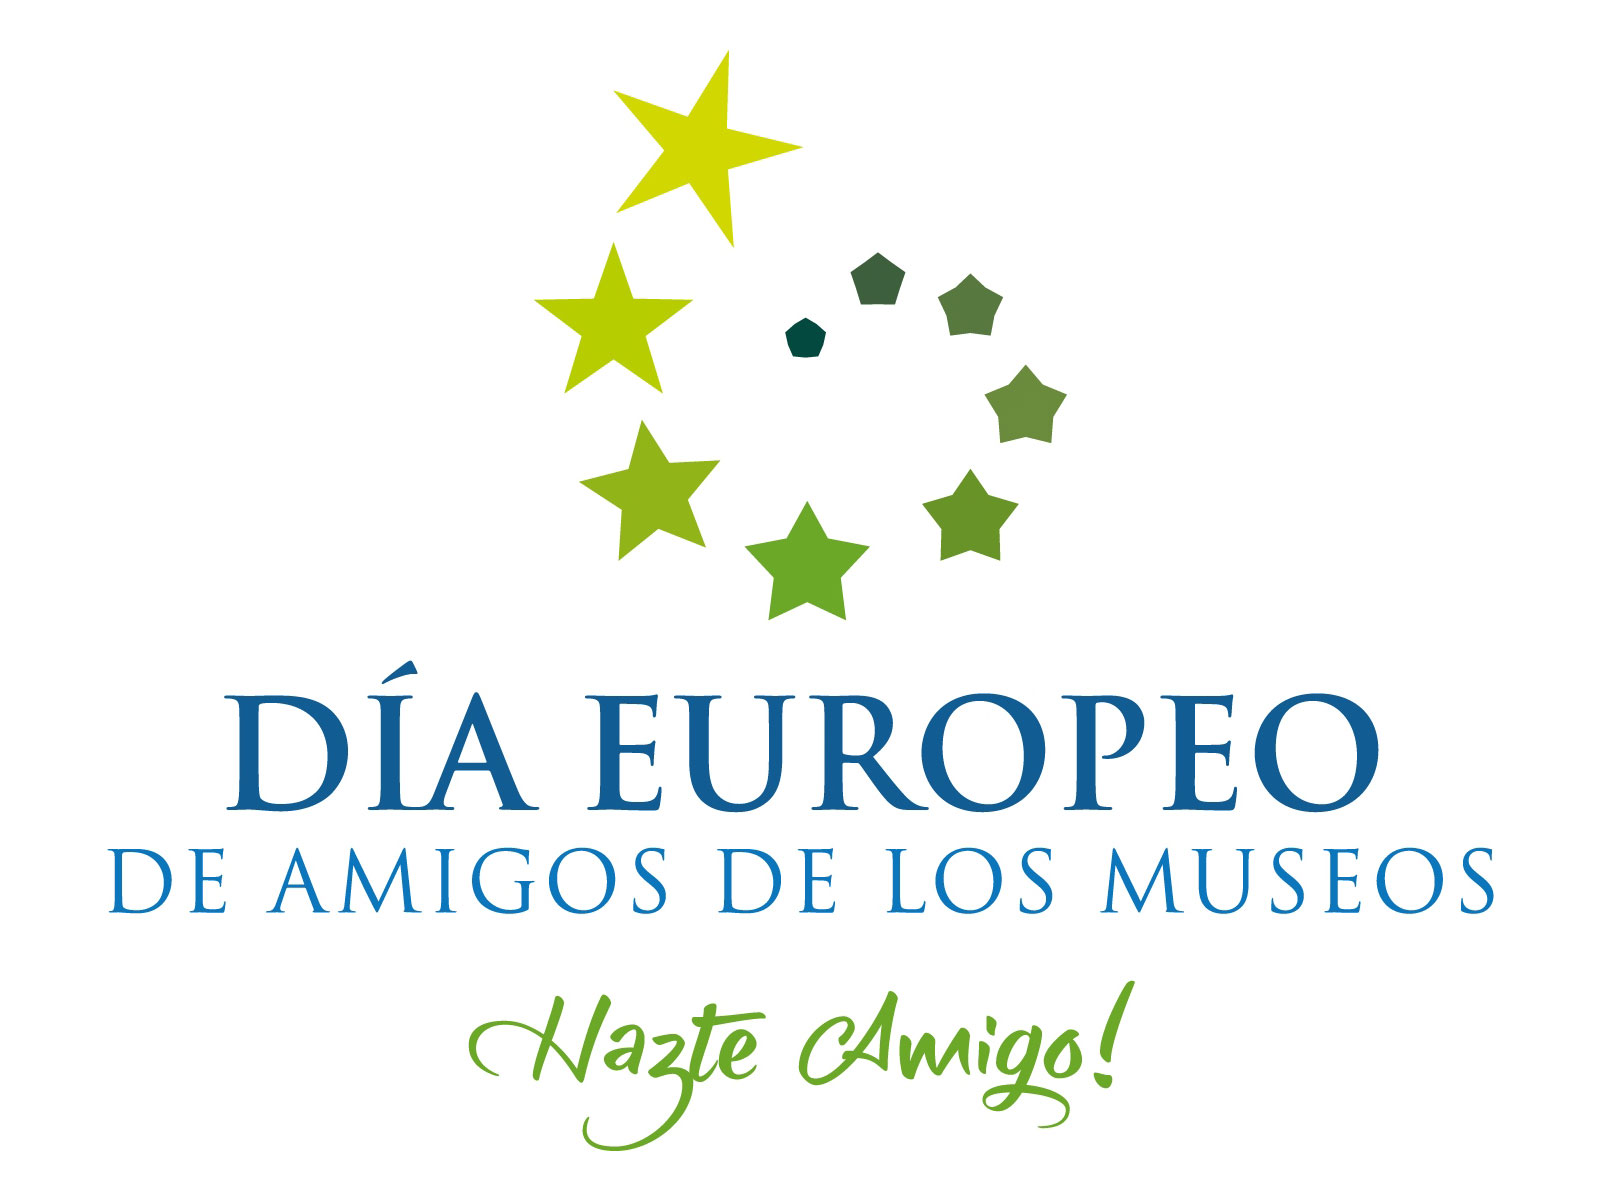 Día Europeo de Amigos de los Museos